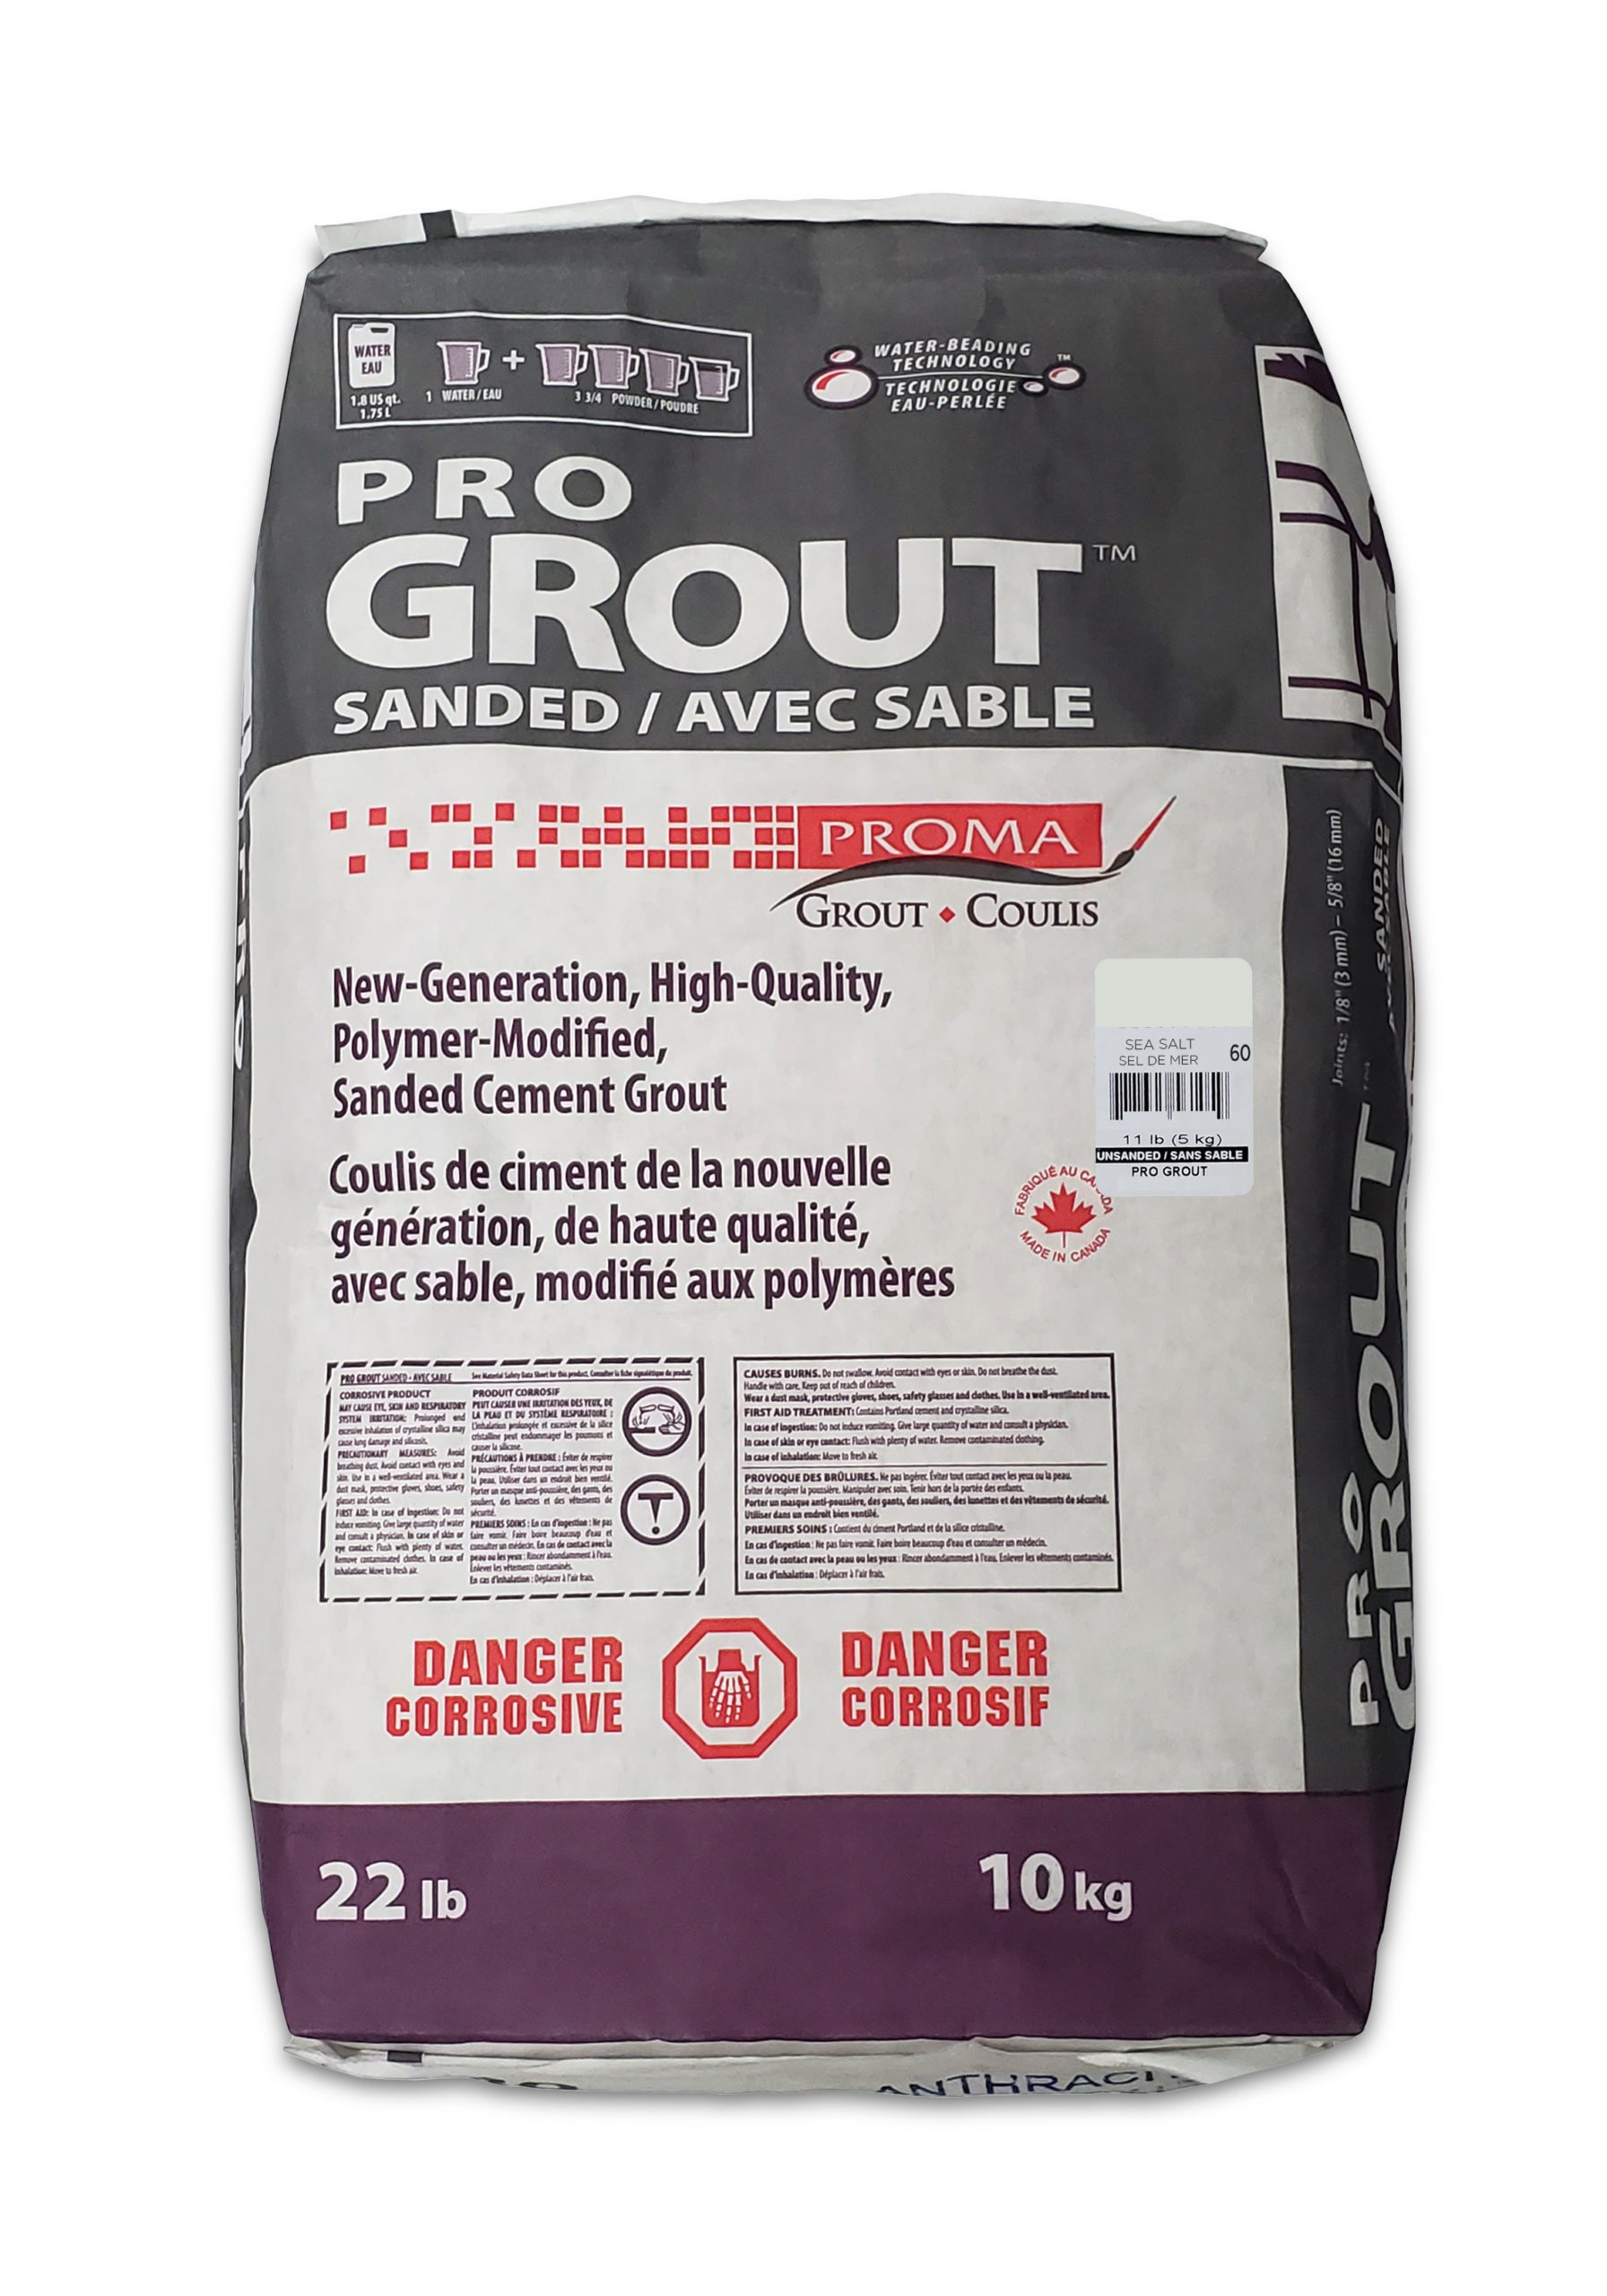 Pro Grout – Sanded_Sea Salt_10kg_22lb